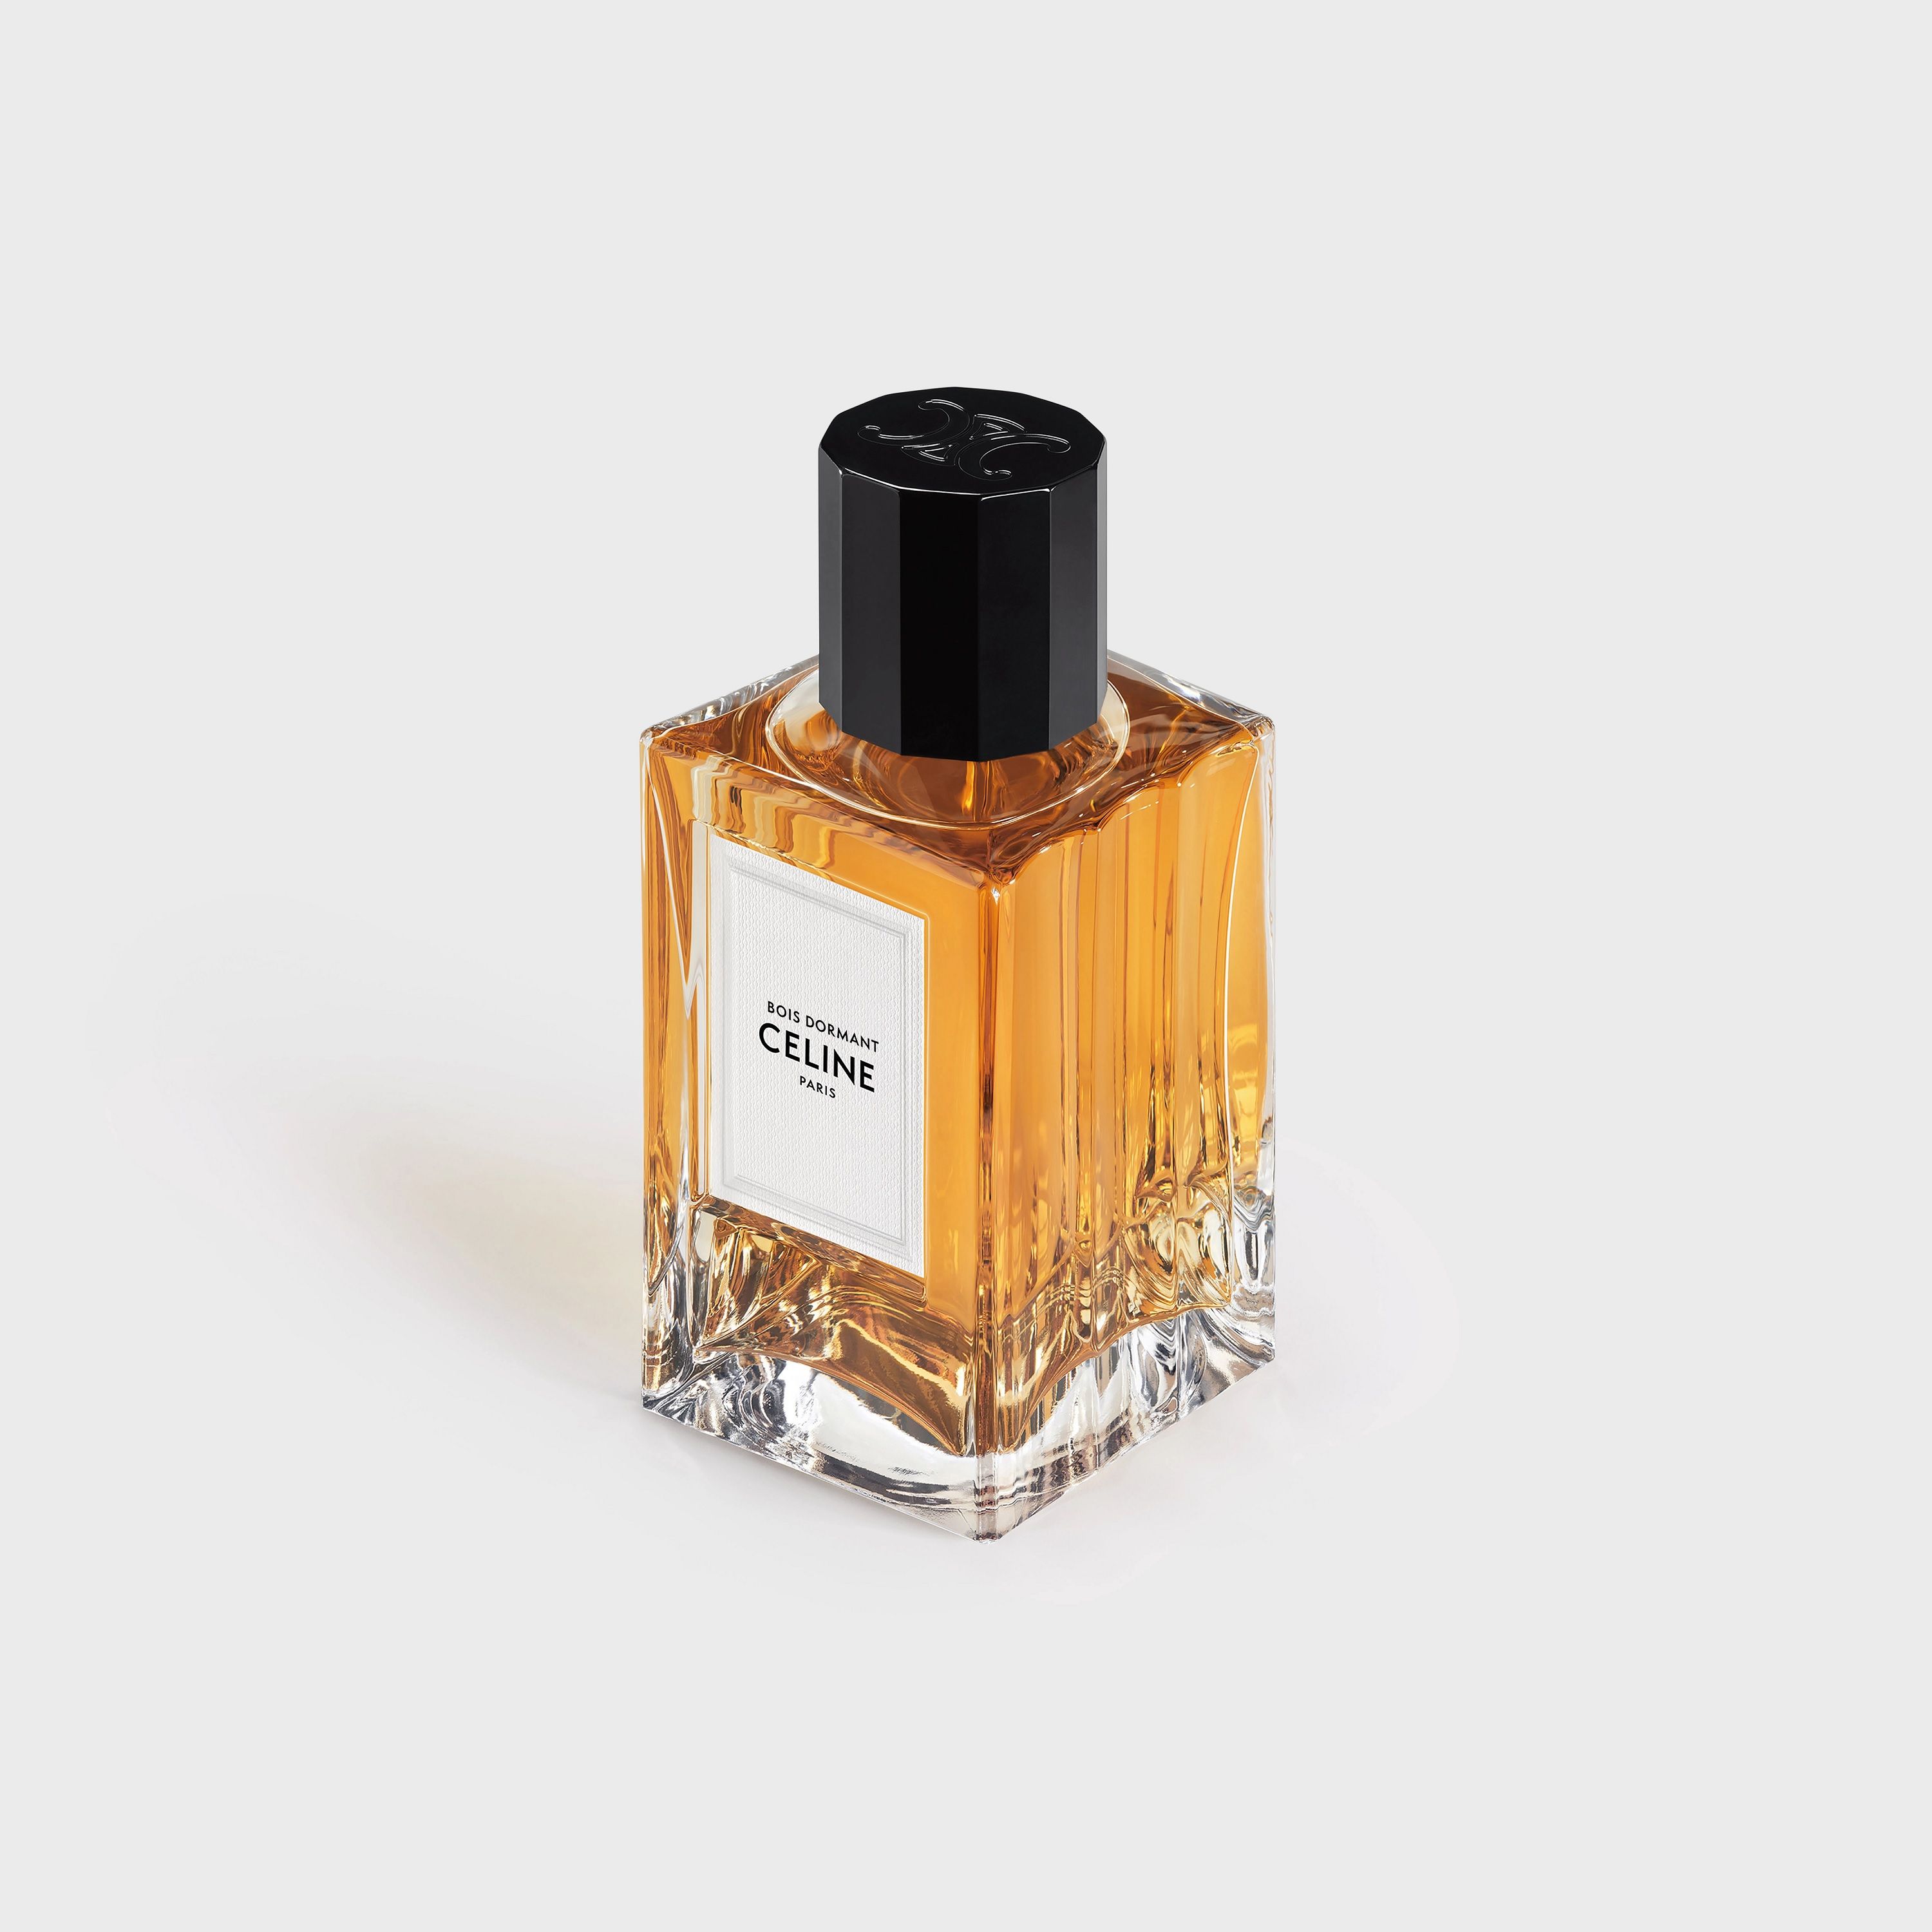 Bois Dormant Celine perfume - a new fragrance for women and men 2022